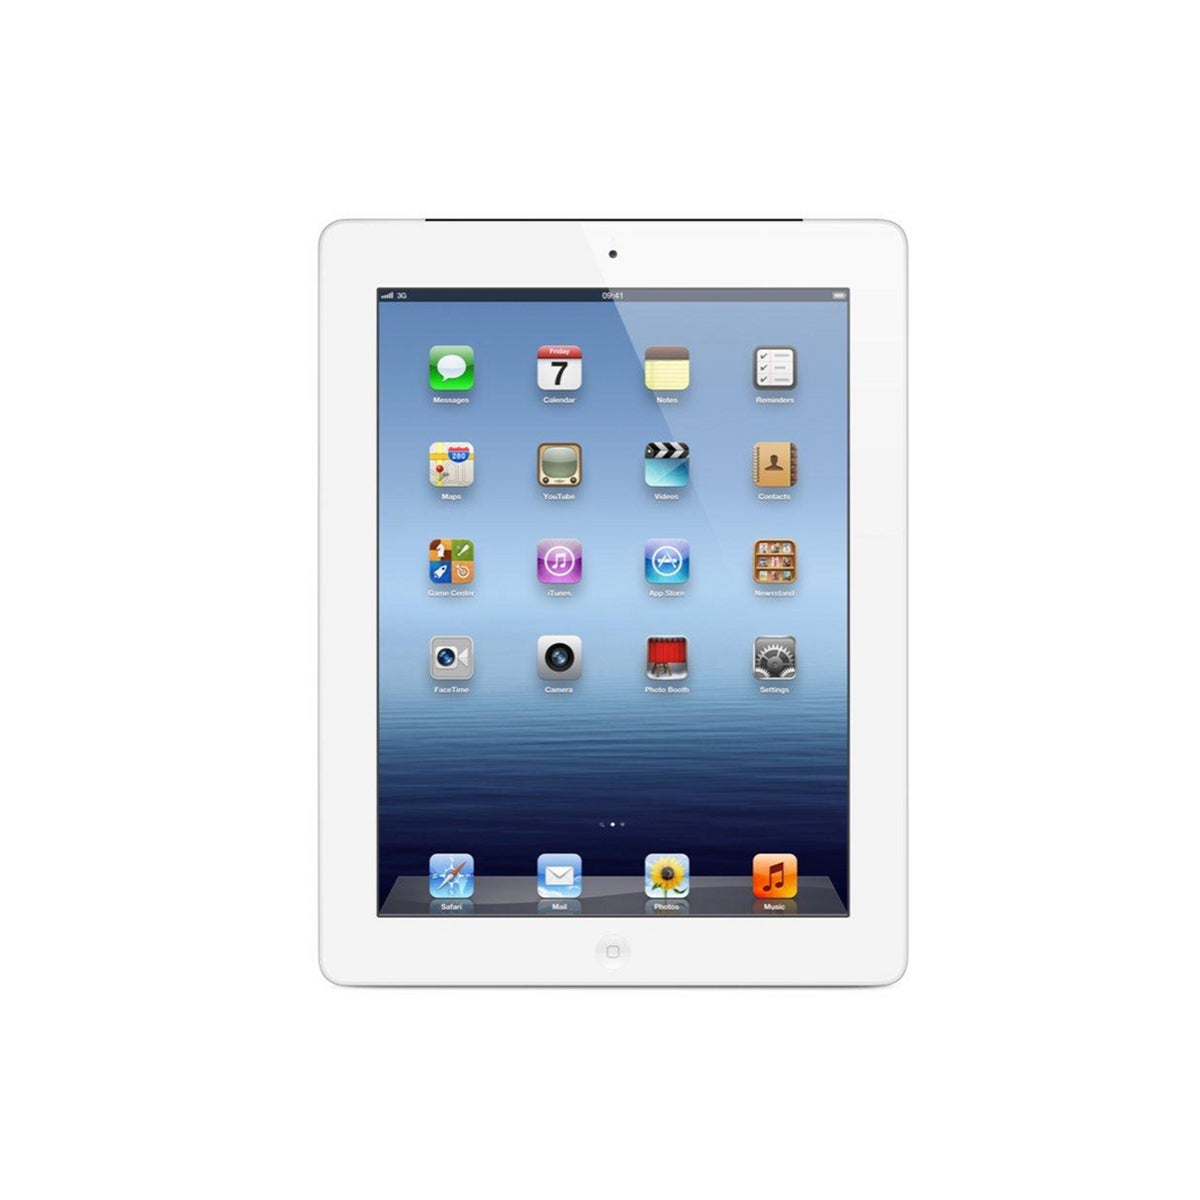 Apple iPad 4 16GB Wifi - White - (As New Refurbished)